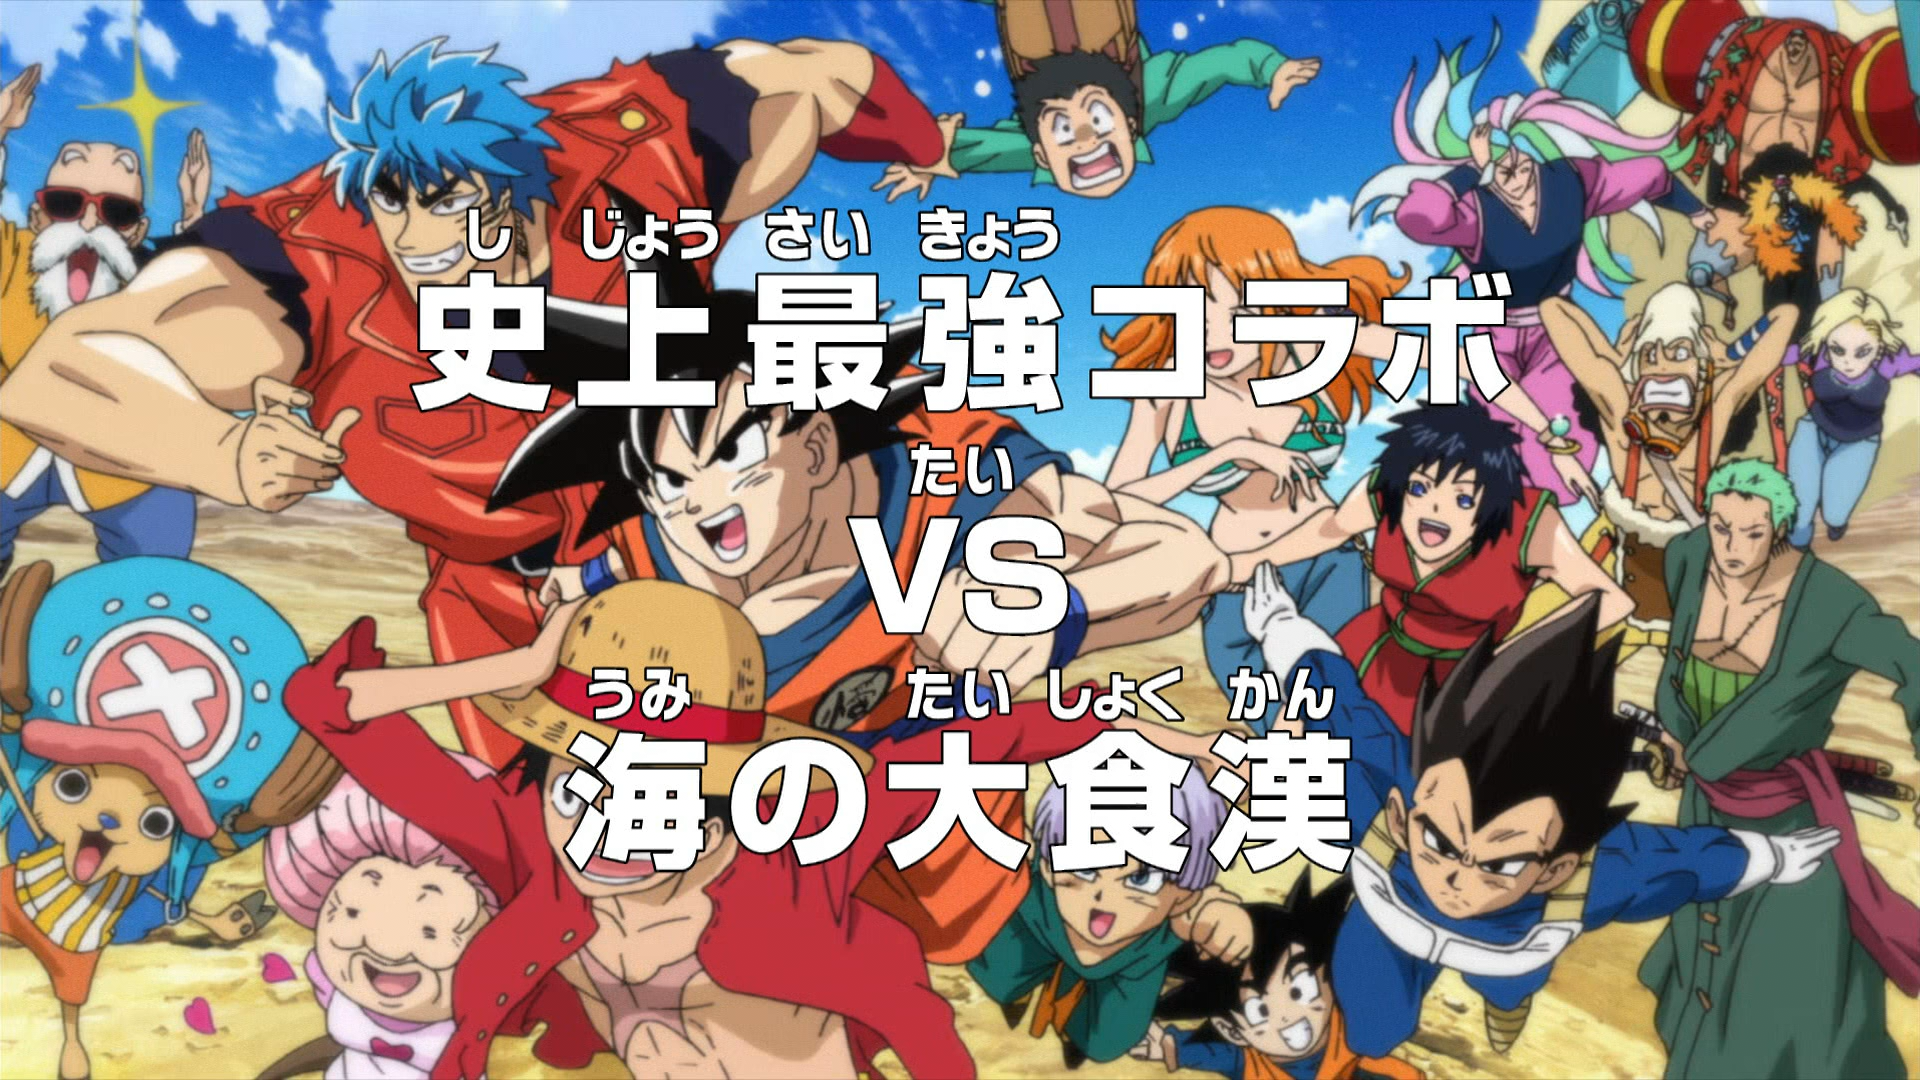 One Piece X Dragon Ball Z / Zoro X Vegeta - One Piece: Zoro Multiverse